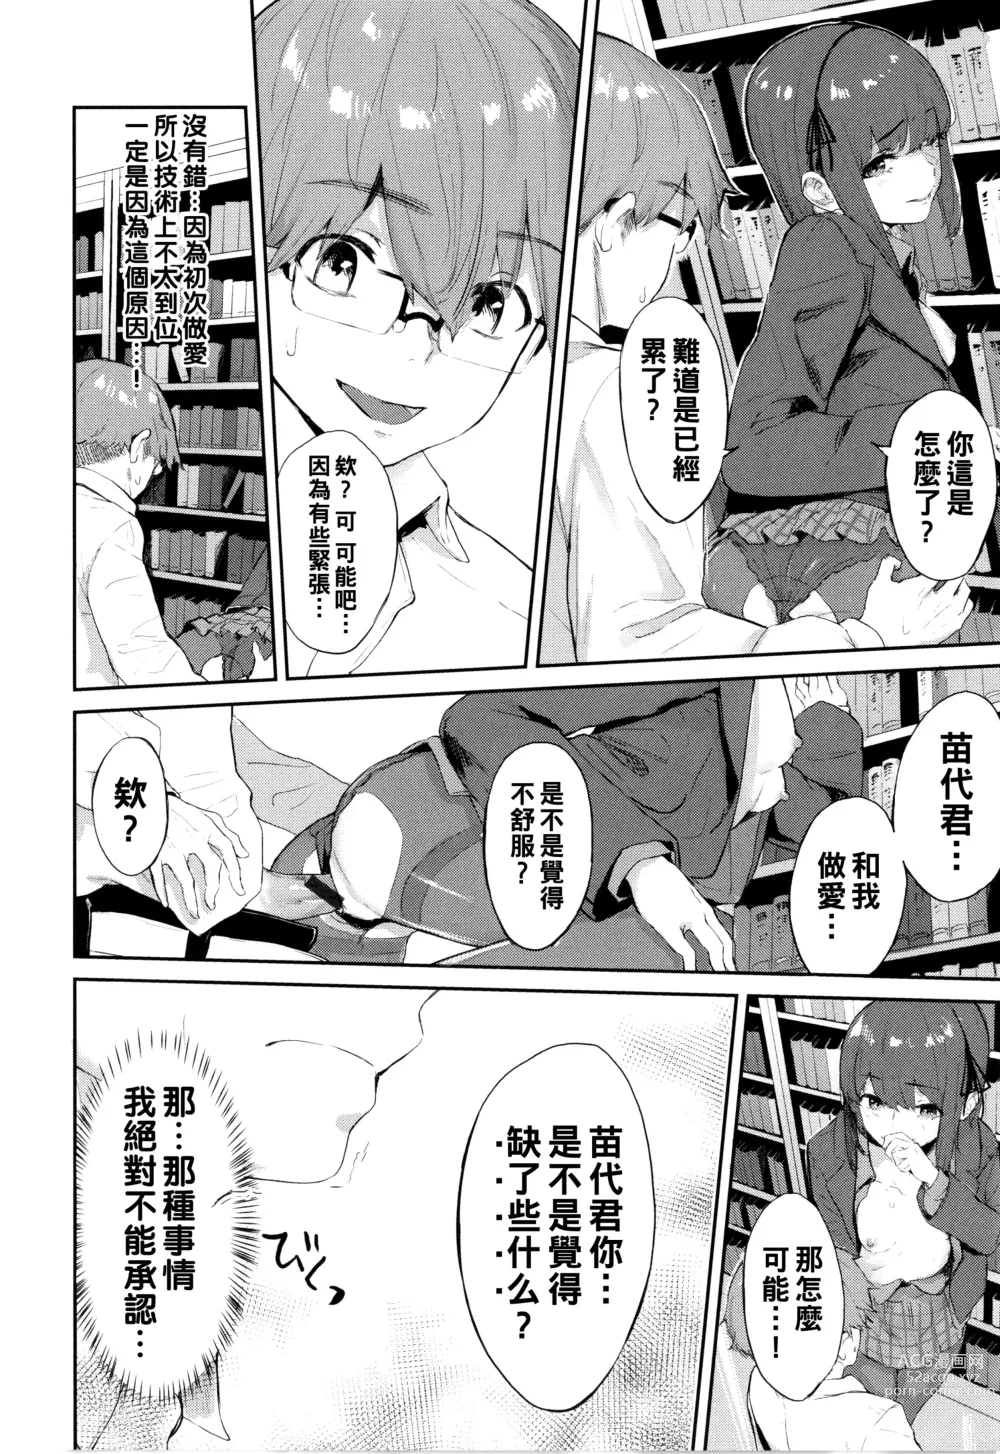 Page 12 of manga Toshoshitsu no Himitsu - Library Secrets